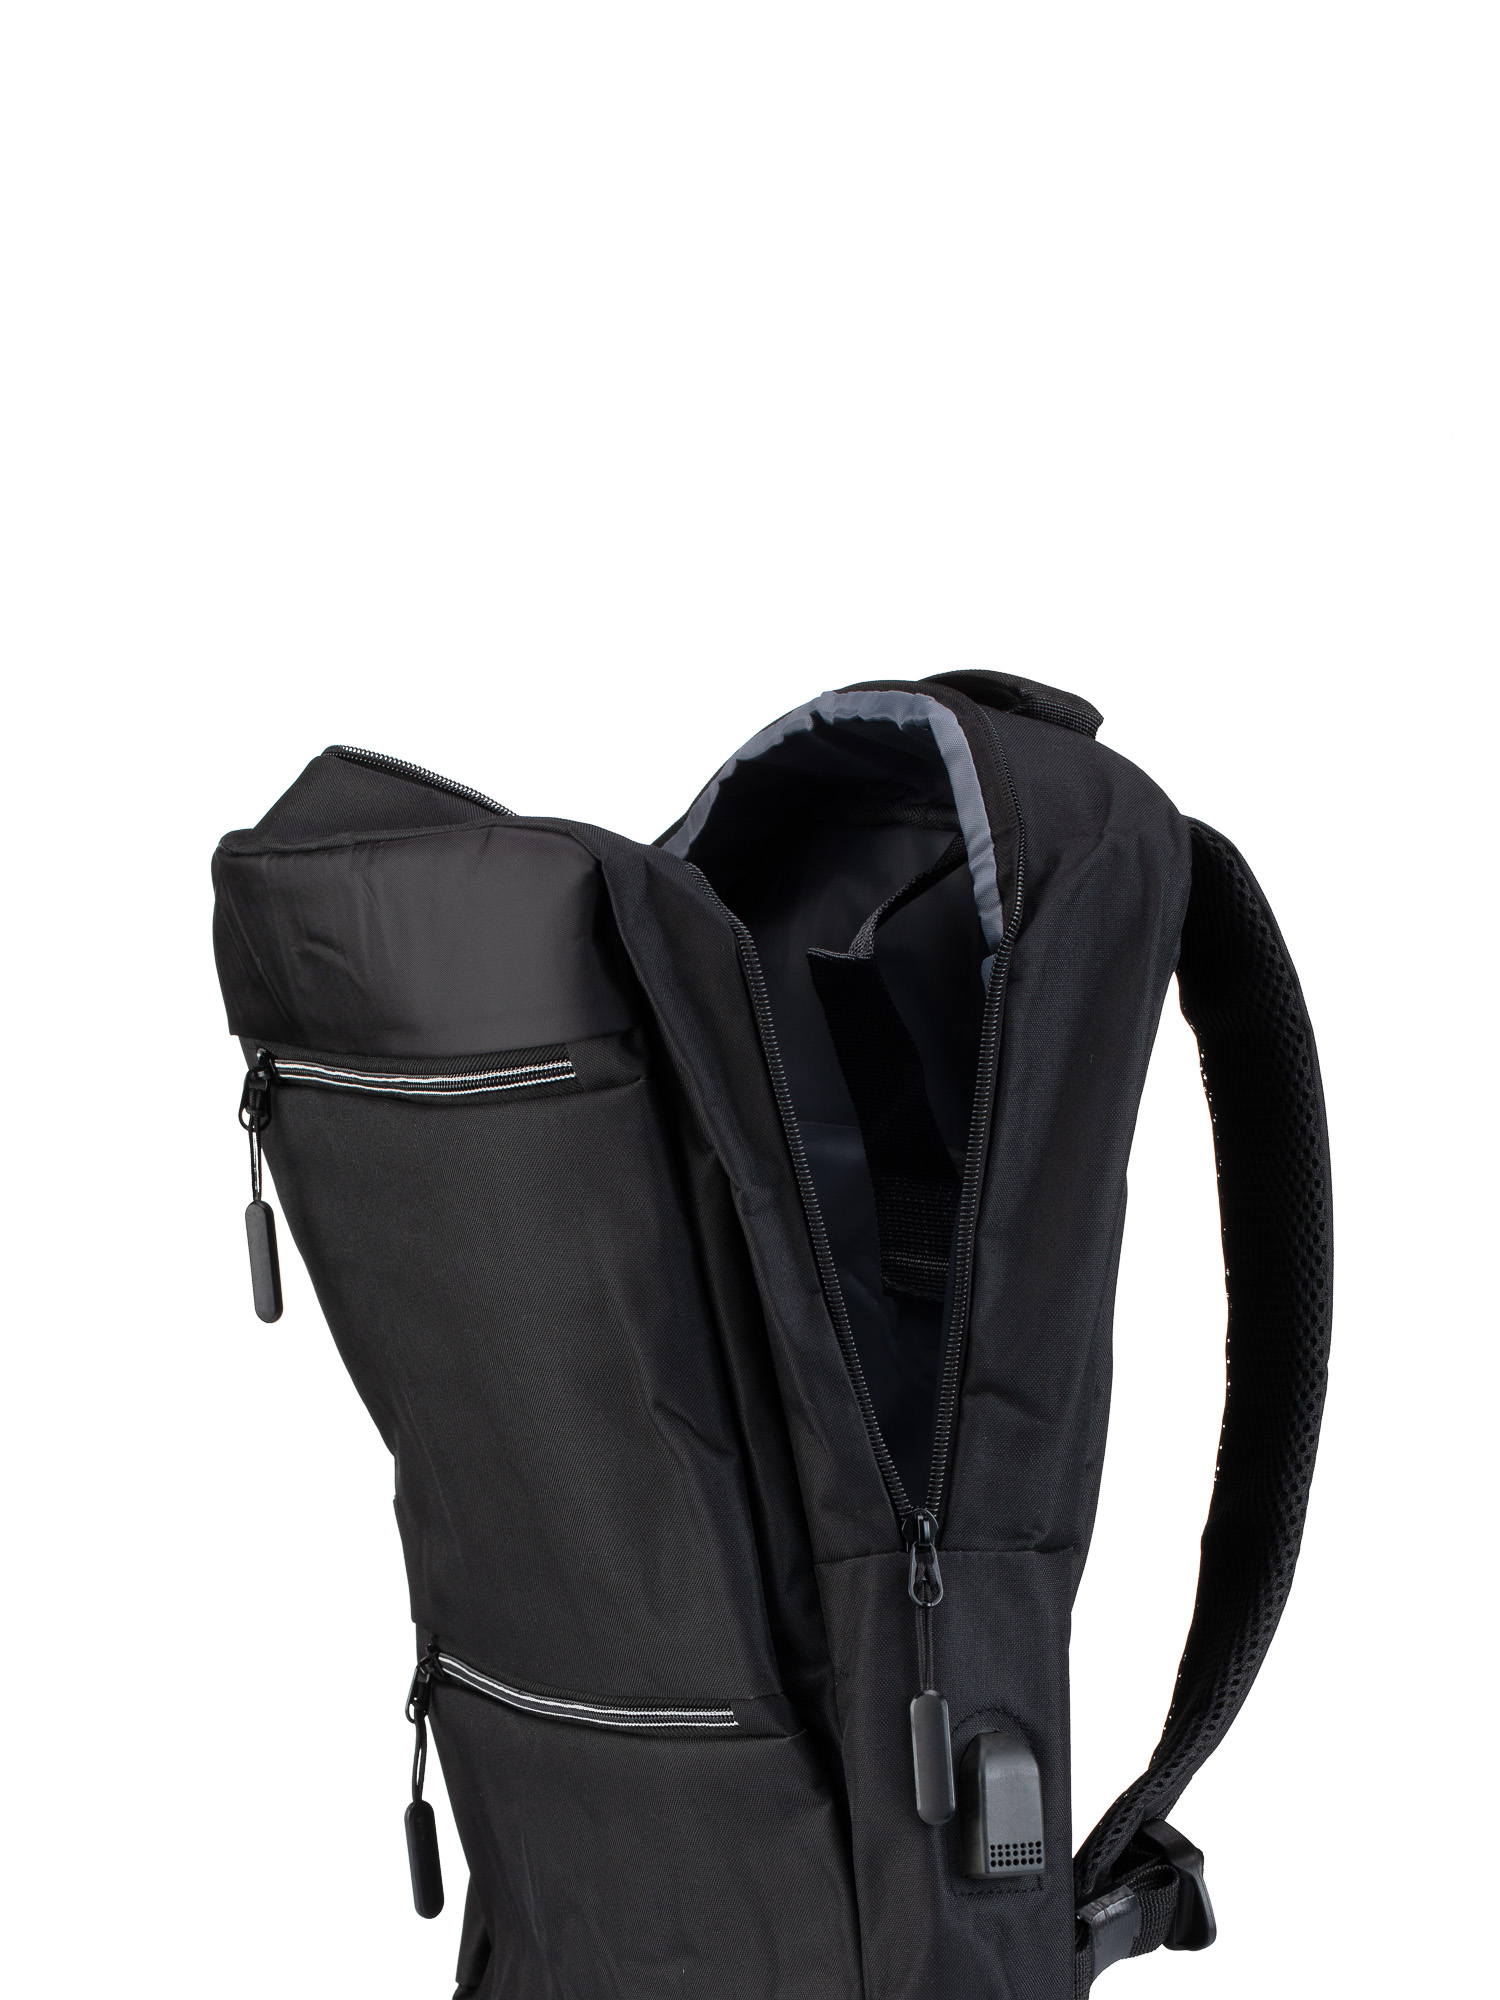 Backpack Υφασμάτινο Ανδρικό - Μαύρο